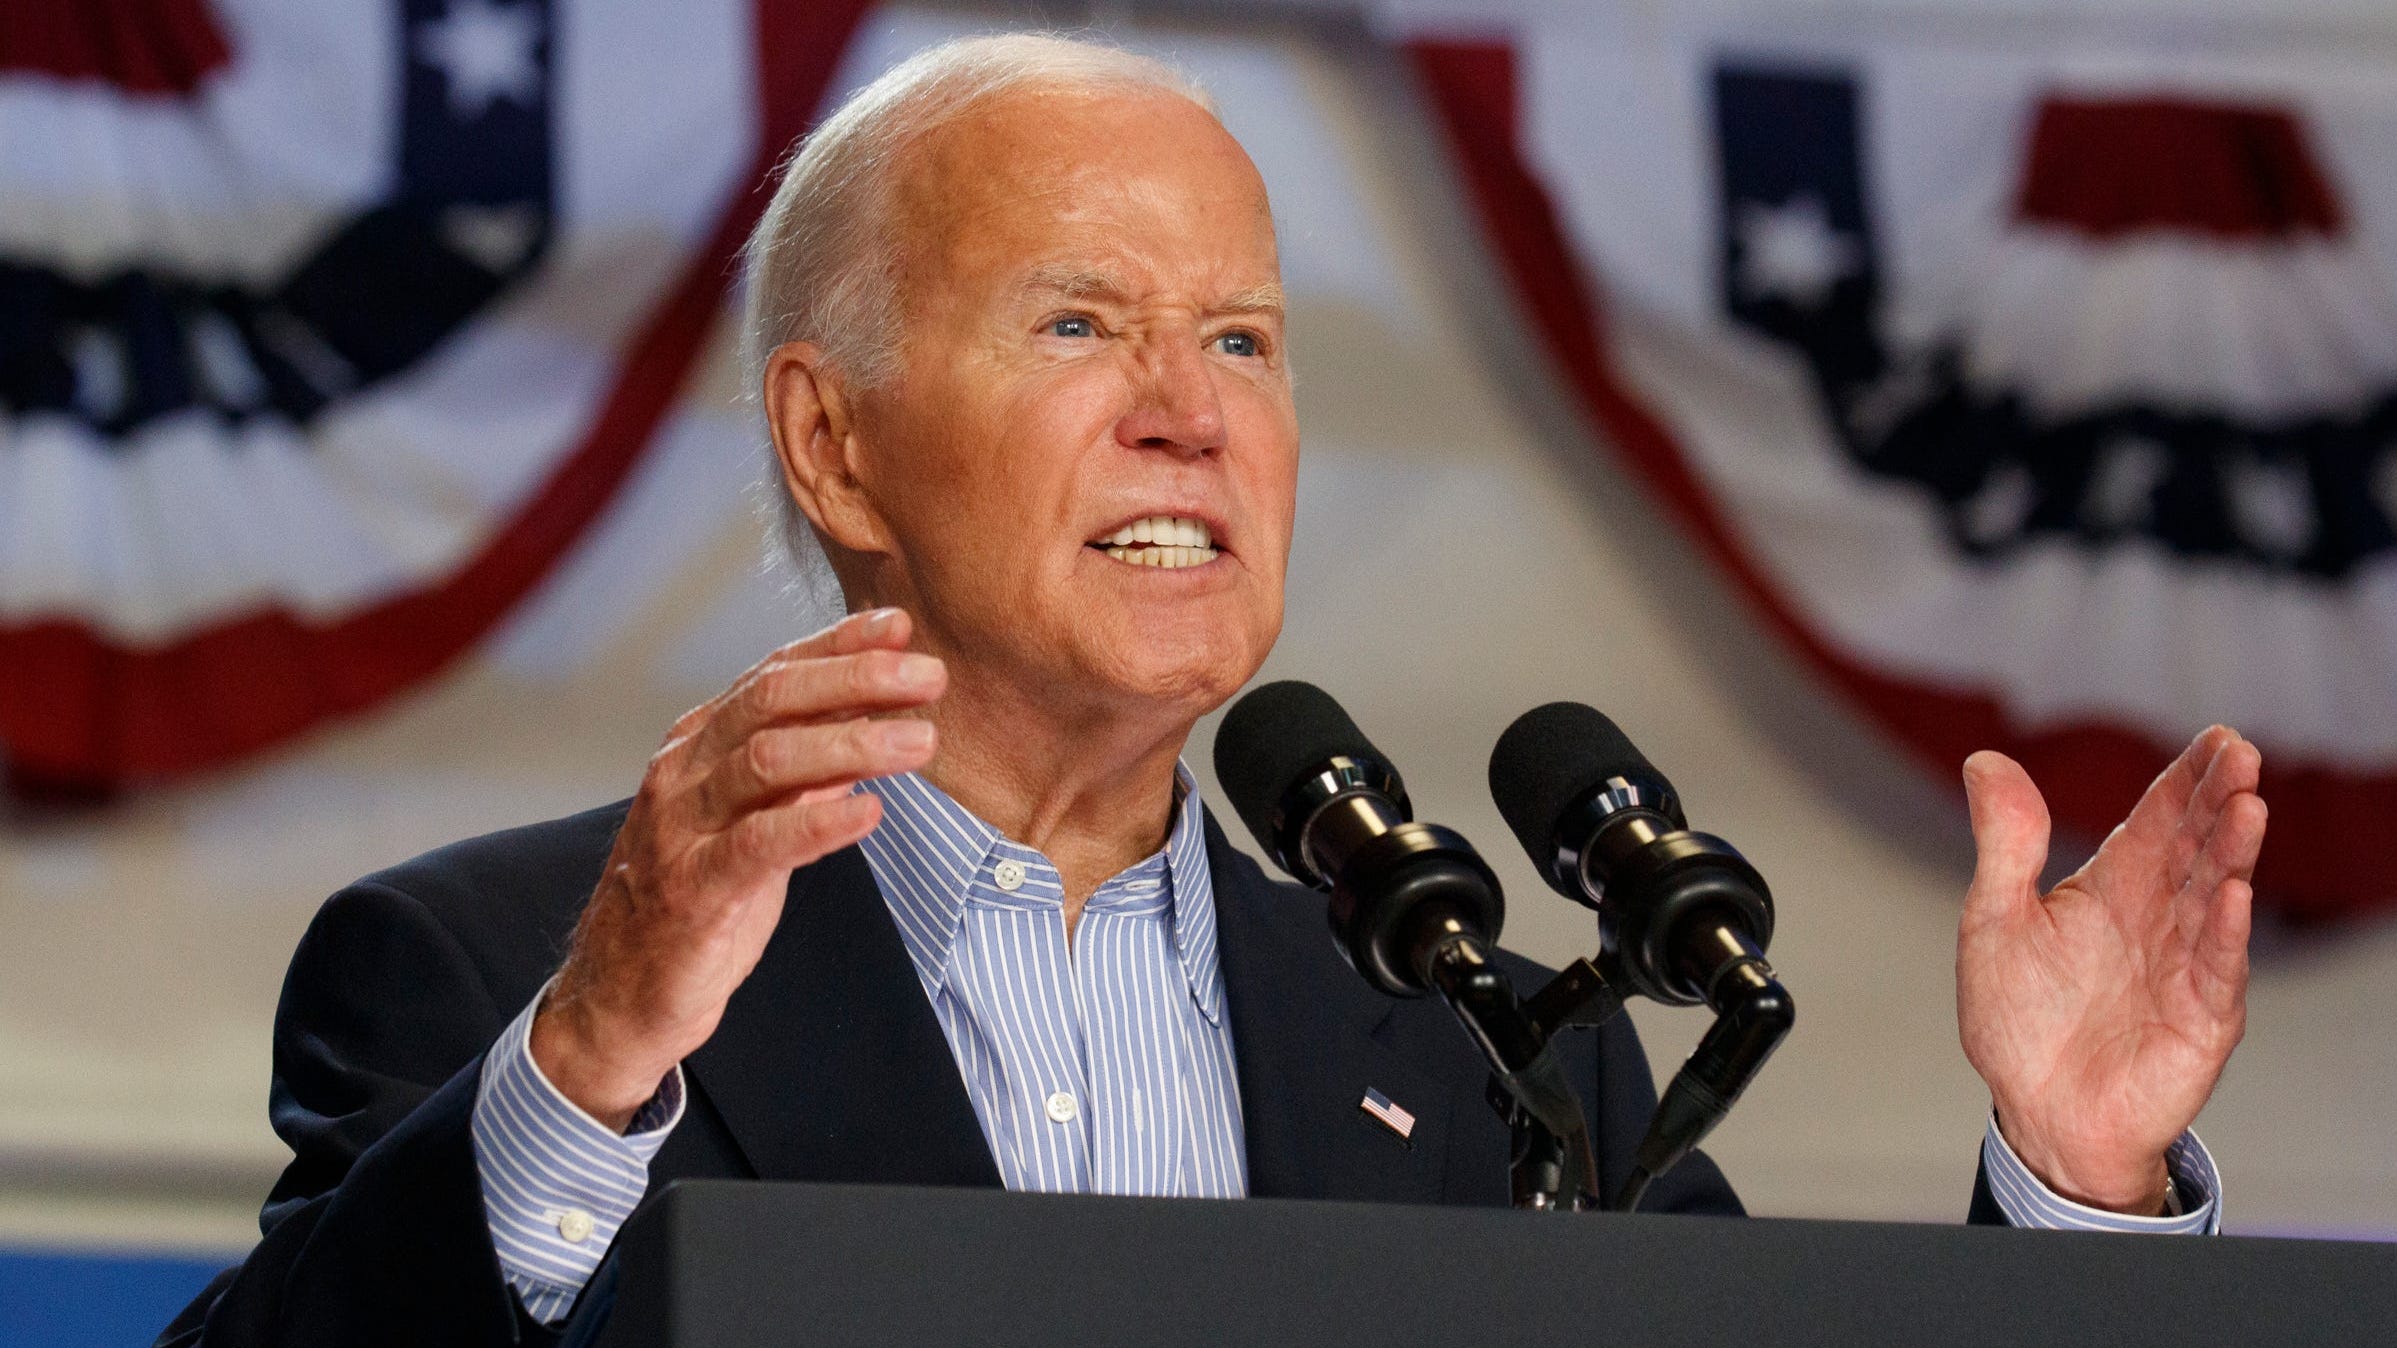 'Still in shape' Joe Biden bargains with America to stay in race